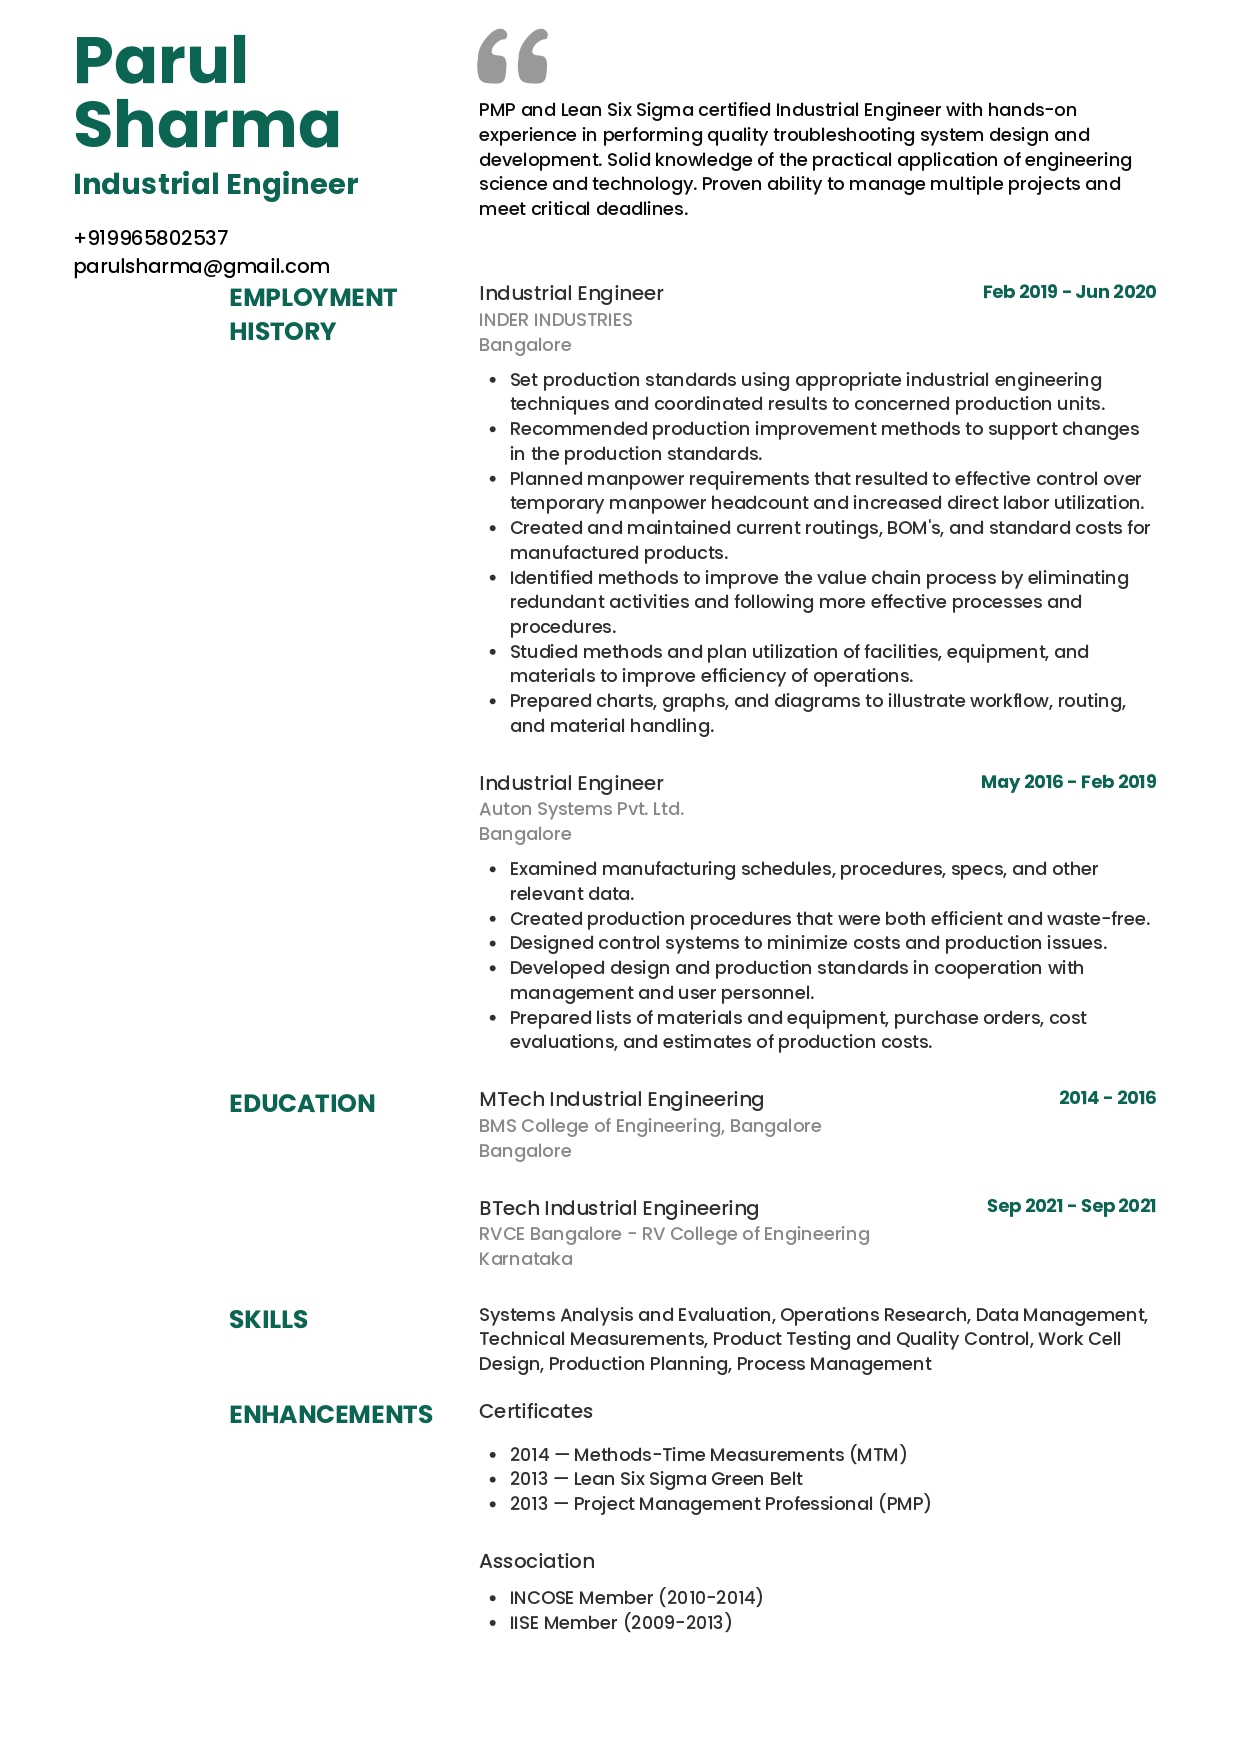 Resume of Industrial Engineer